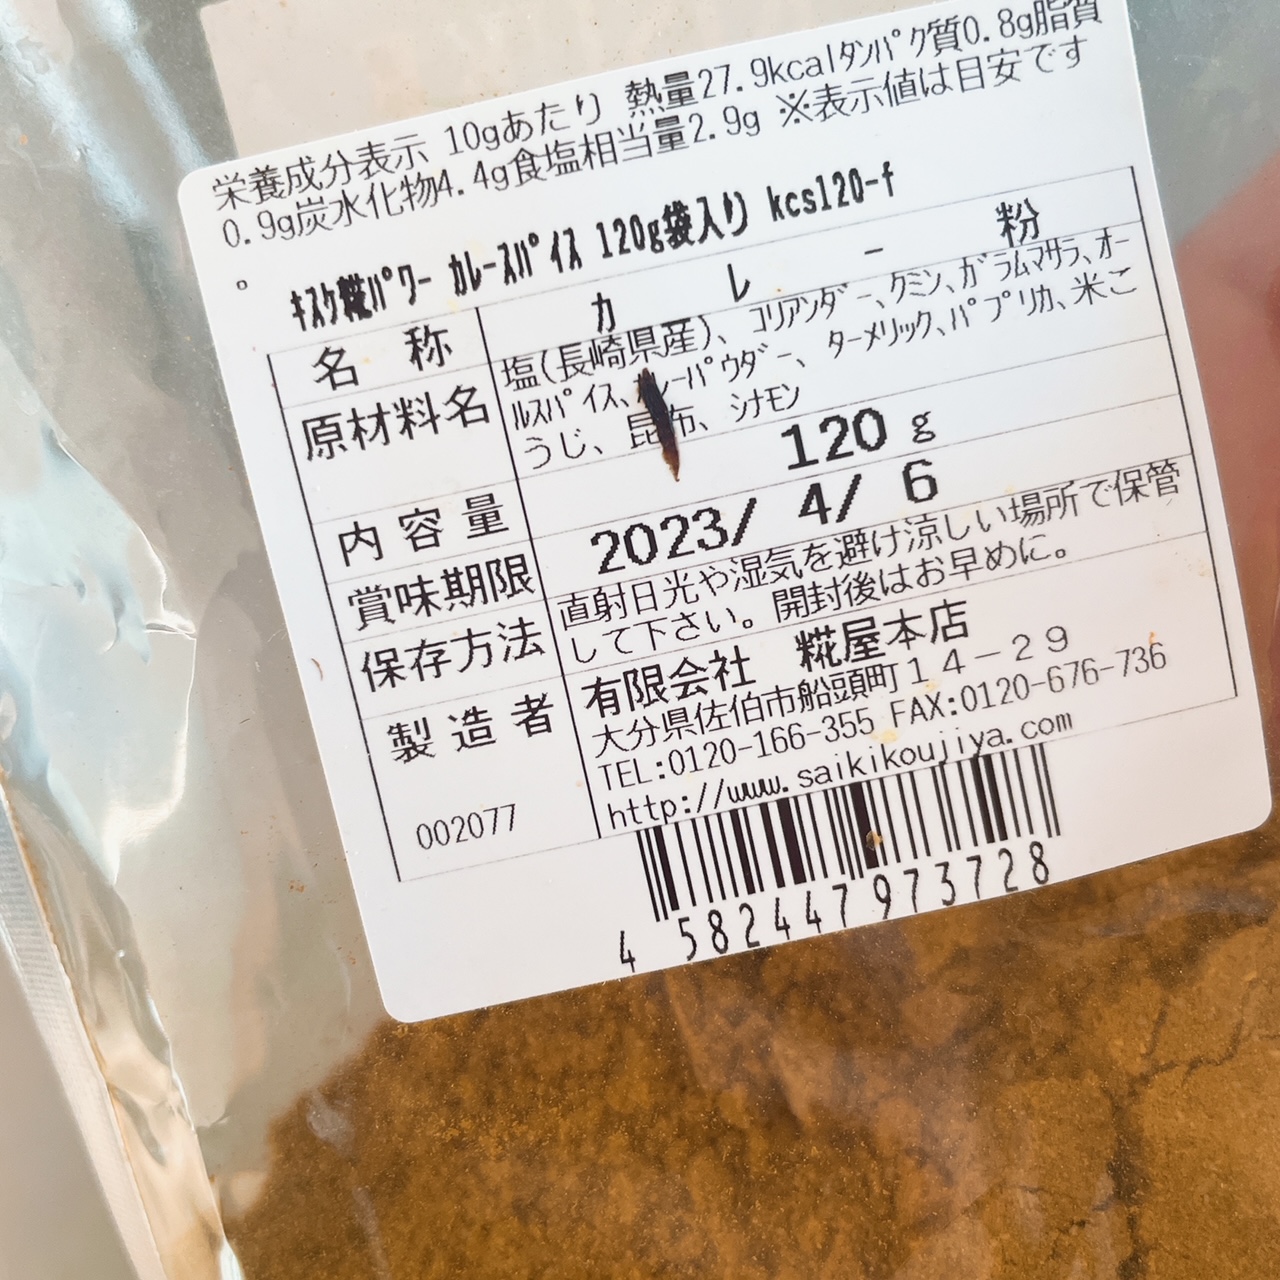 原材料にはコリアンダーやターメリックなどの定番スパイスに加え、長崎県産の塩、昆布、そして米糀が。